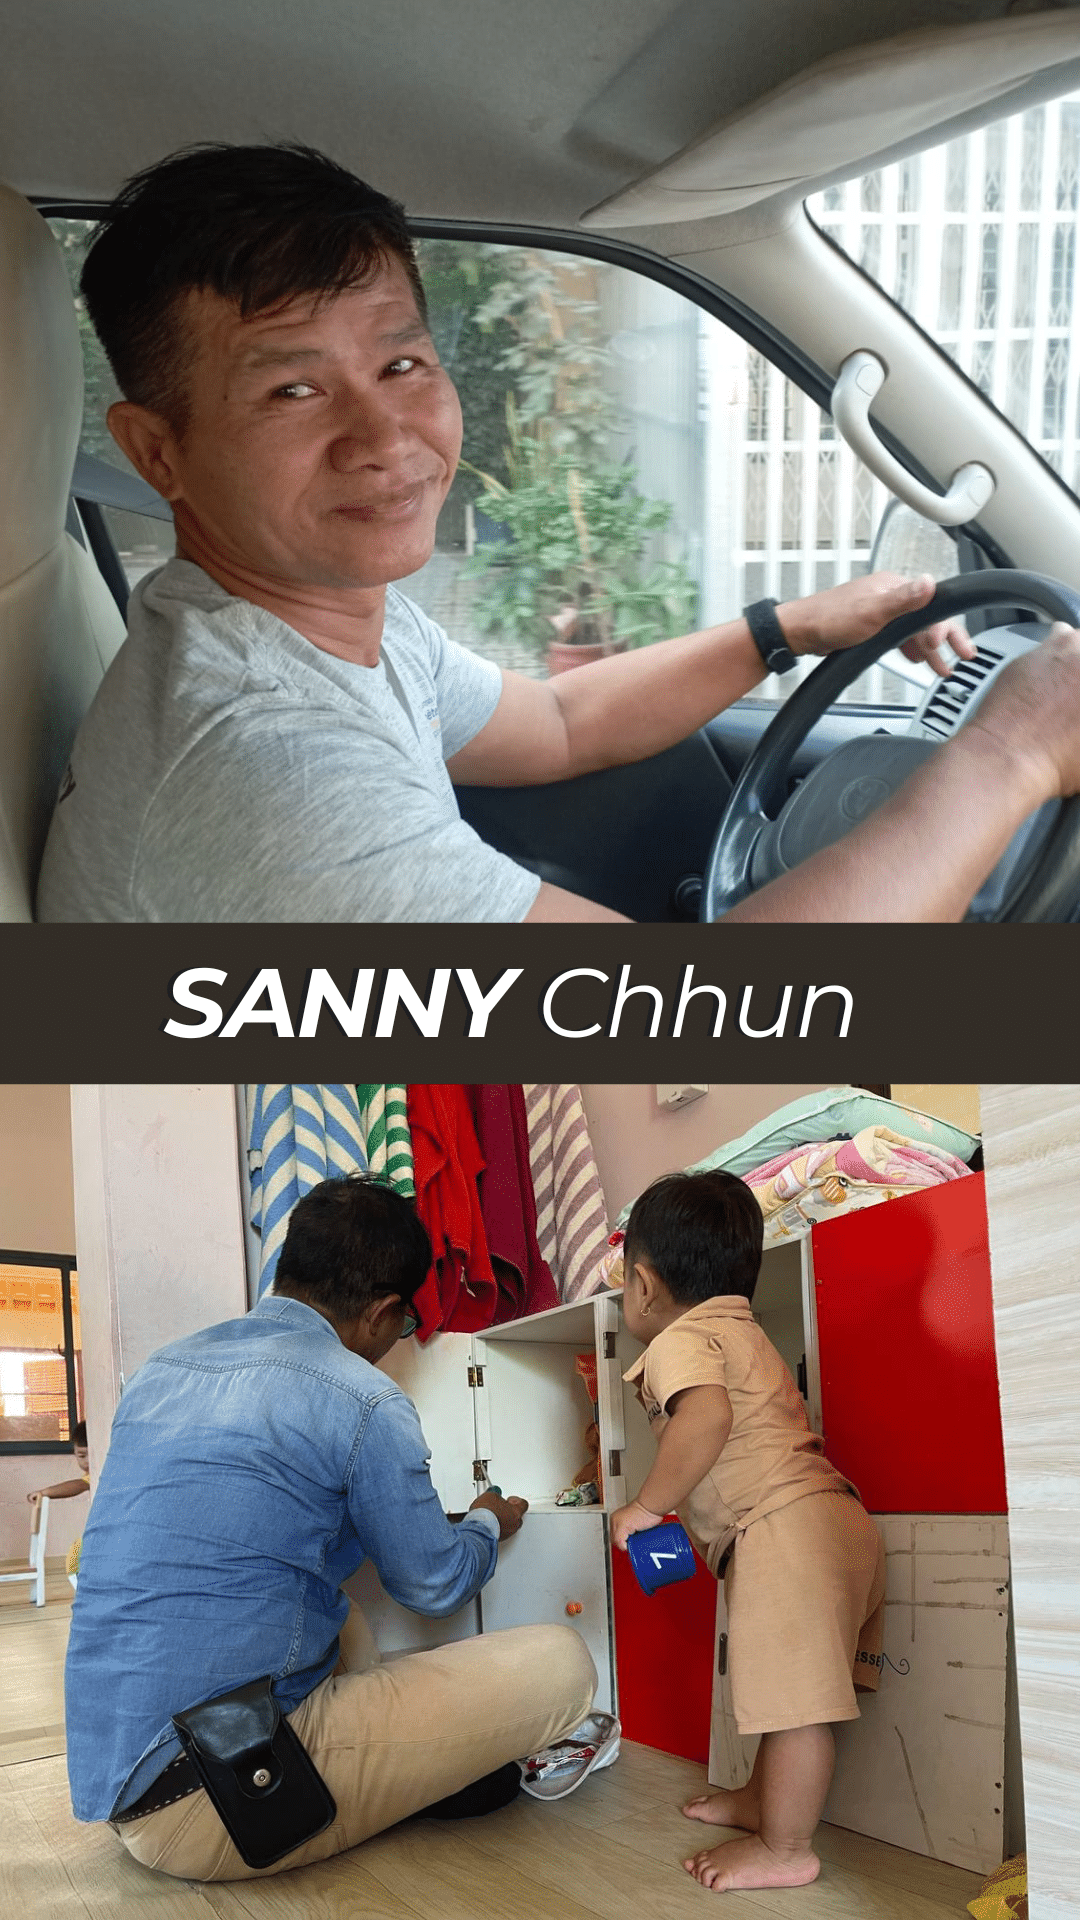 Sanny Chhun